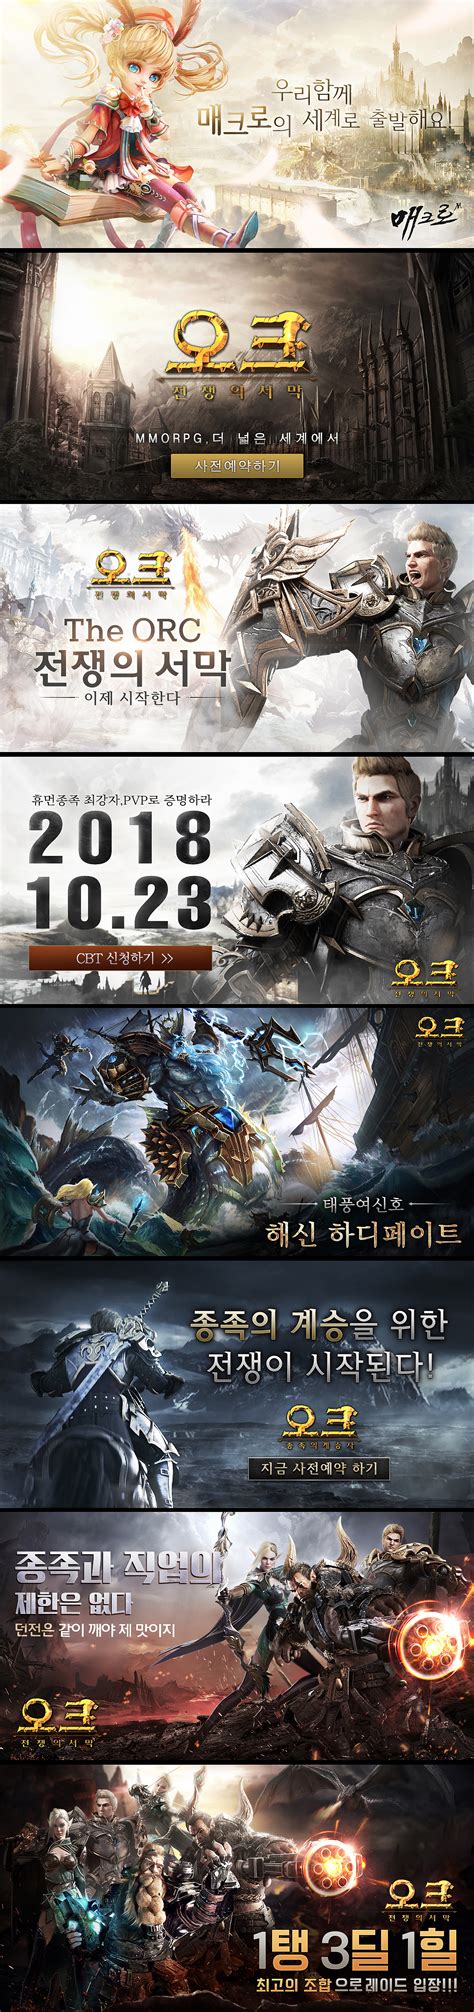 超神英雄韩国游戏网站 - - 大美工dameigong.cn